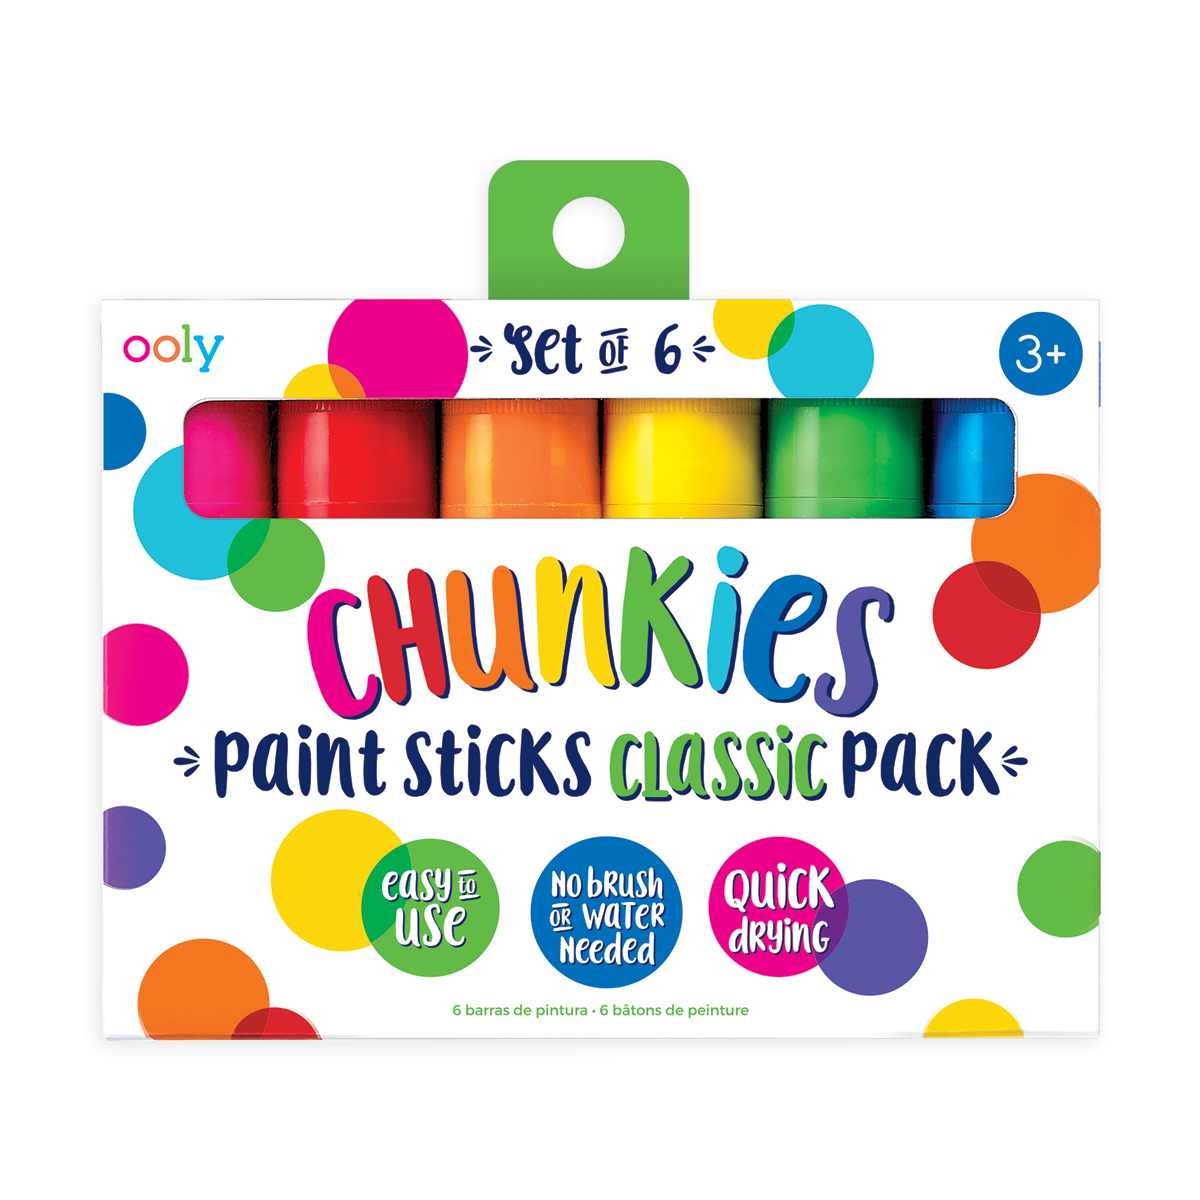  Ooly Chunkies Pastel Boya 6’lı Klasik Renkler